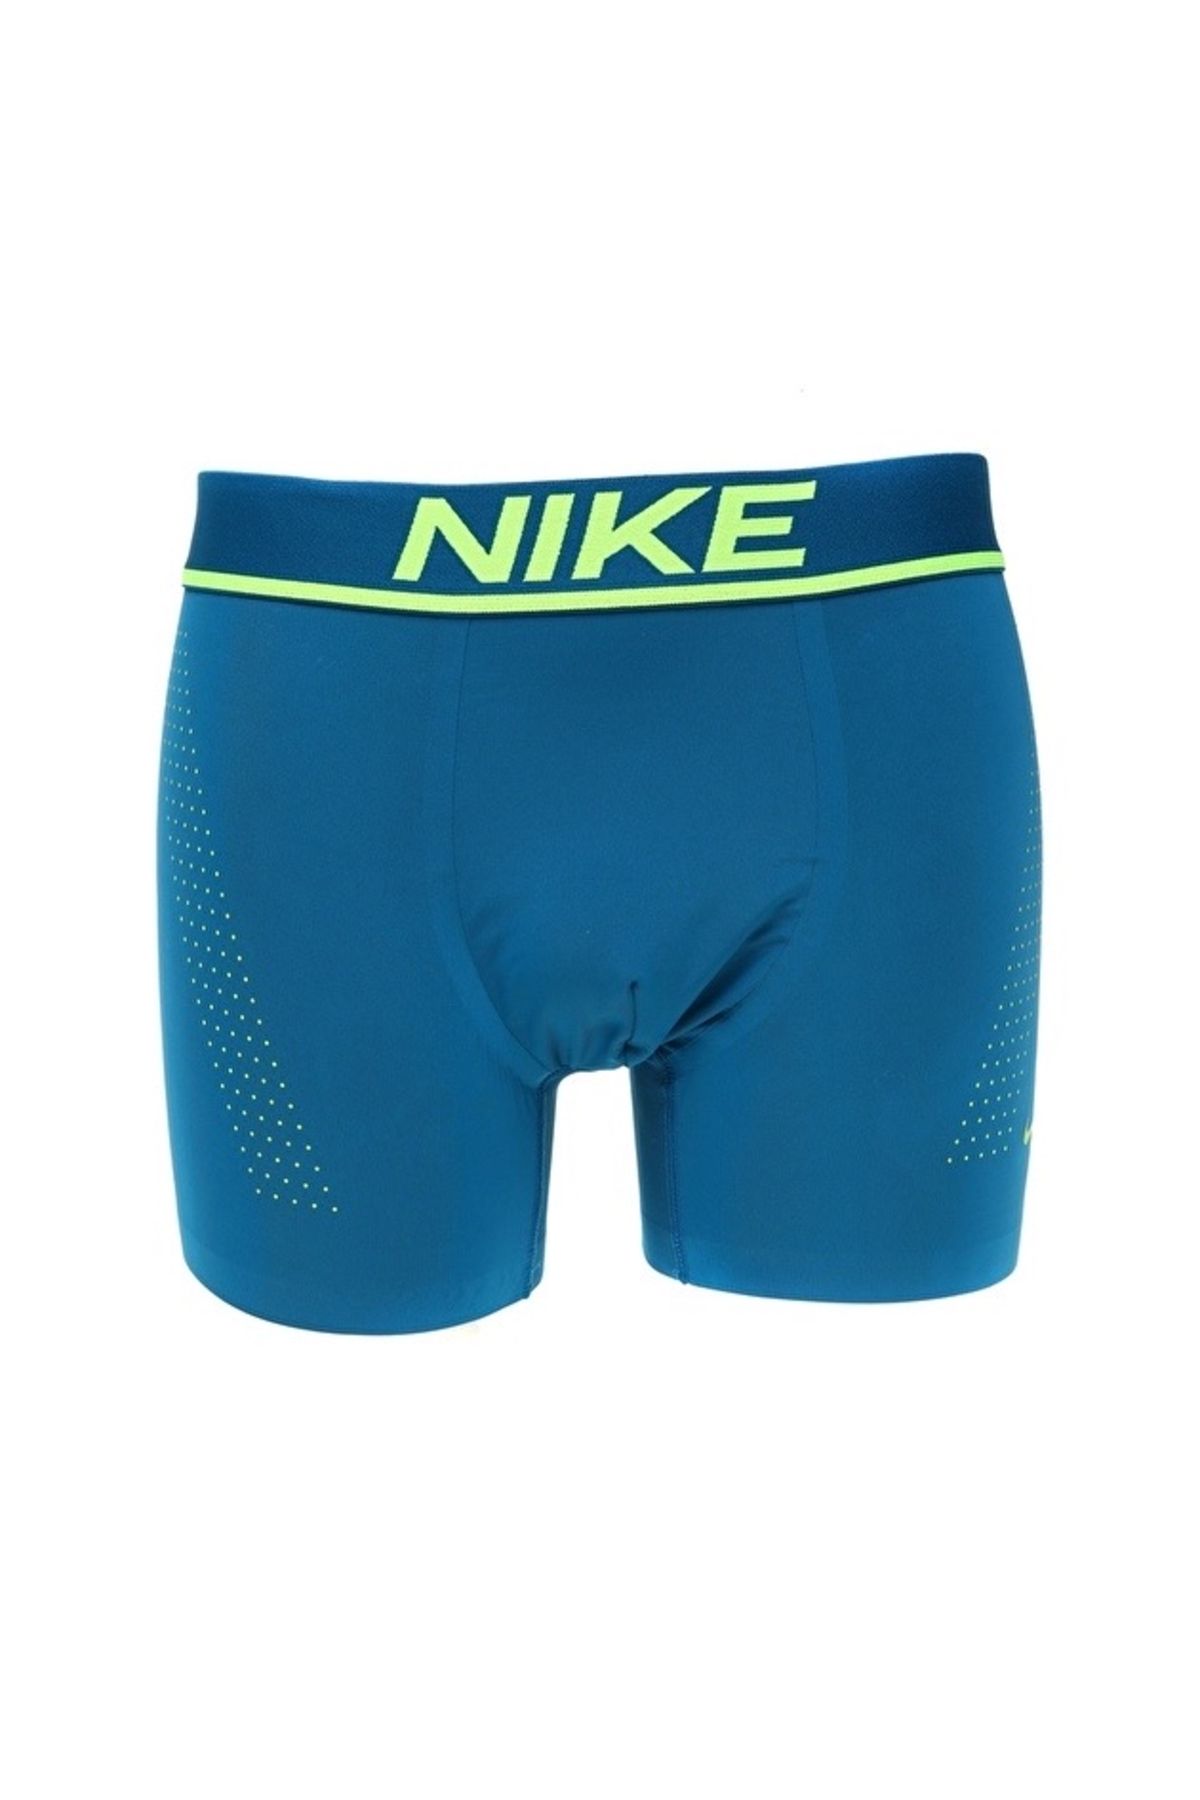 Nike Yeşil Erkek Boxer 0000KE1034 TRUNK